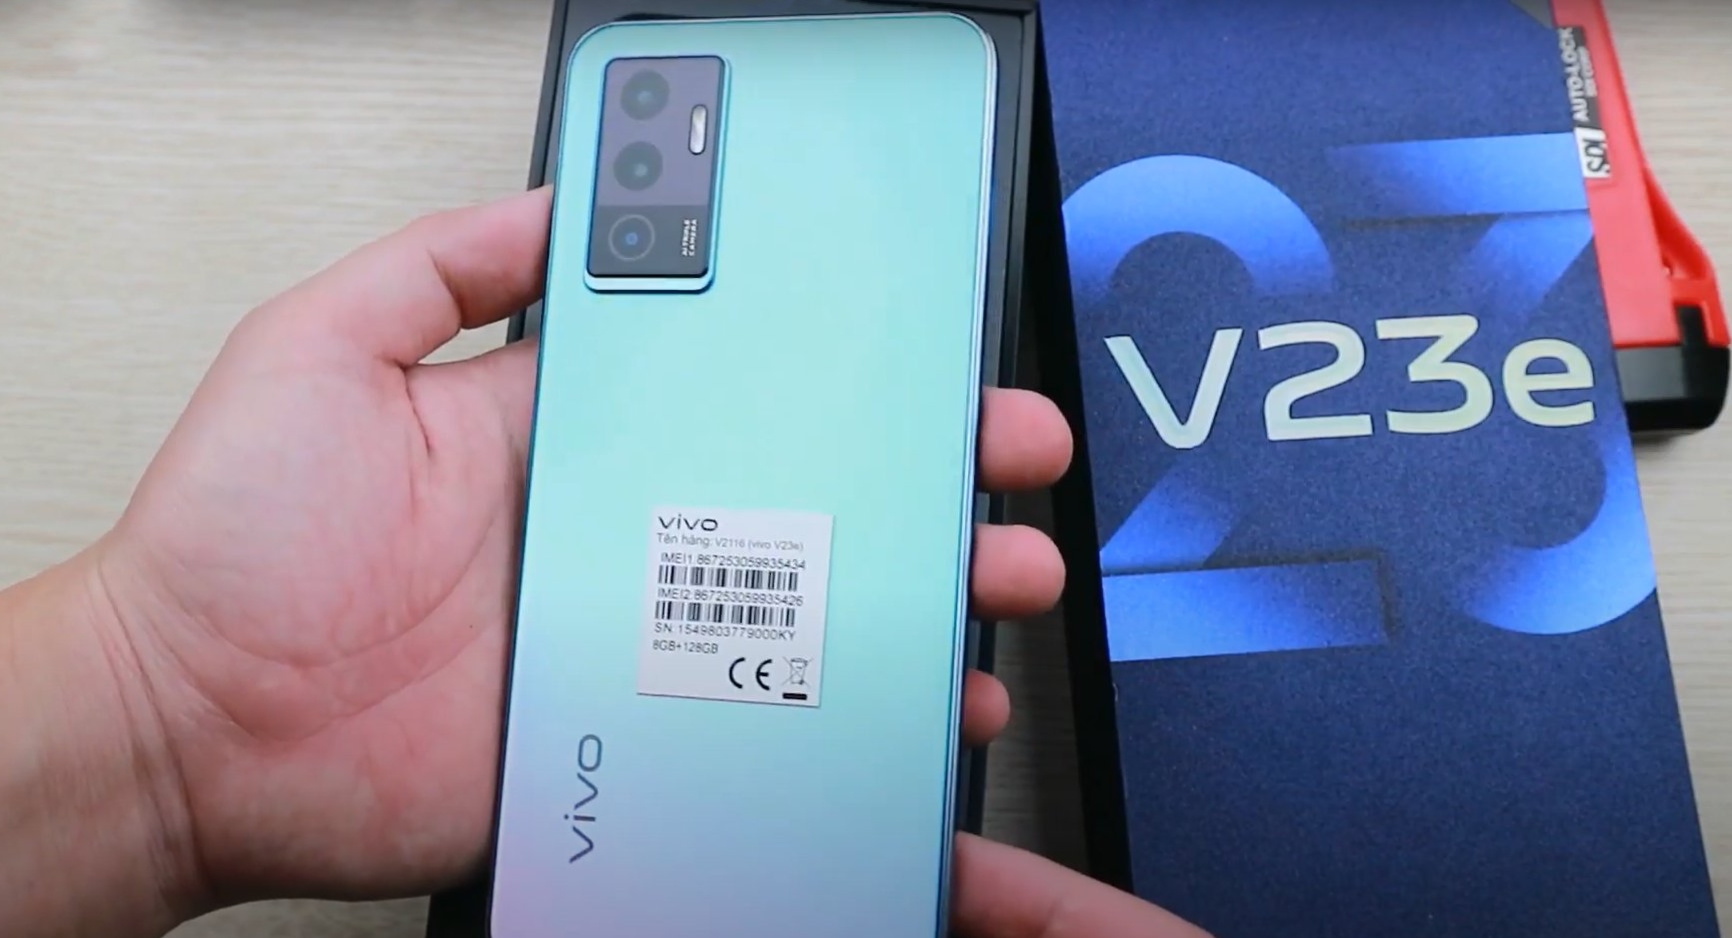 Des photos en direct et les spécifications détaillées du smartphone Vivo V23e ont fait surface